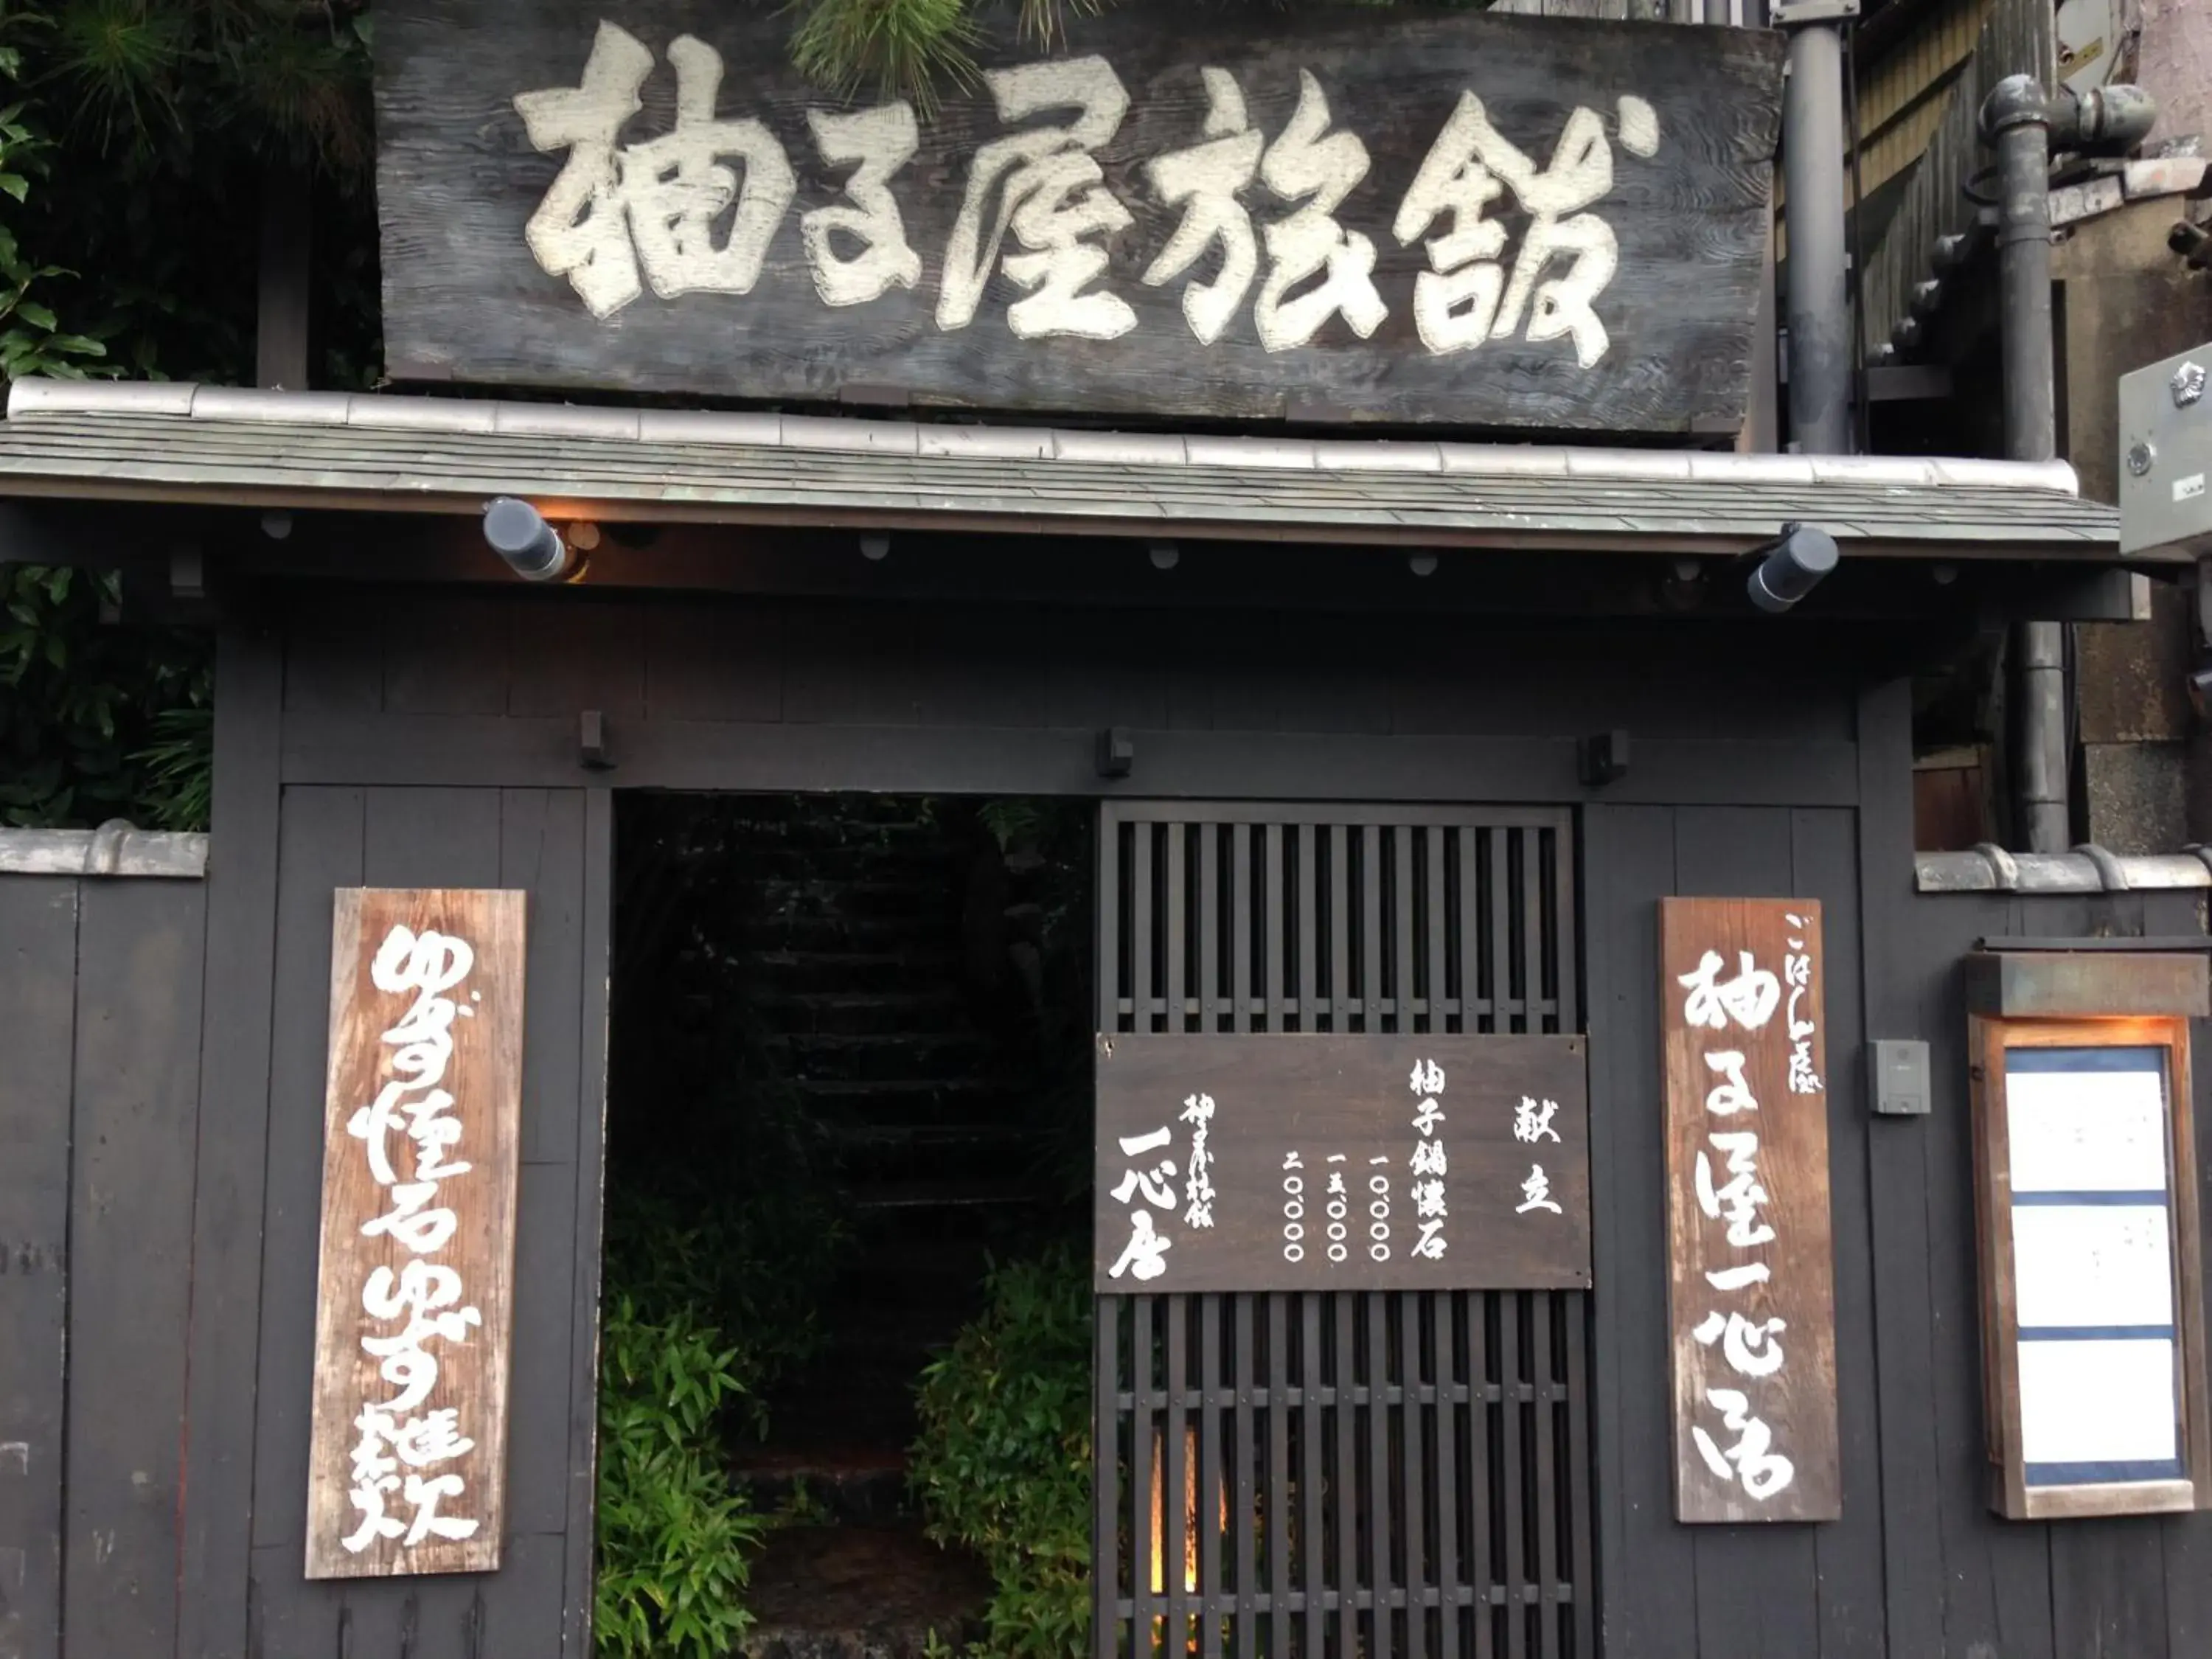 Facade/entrance in Yuzuya Ryokan